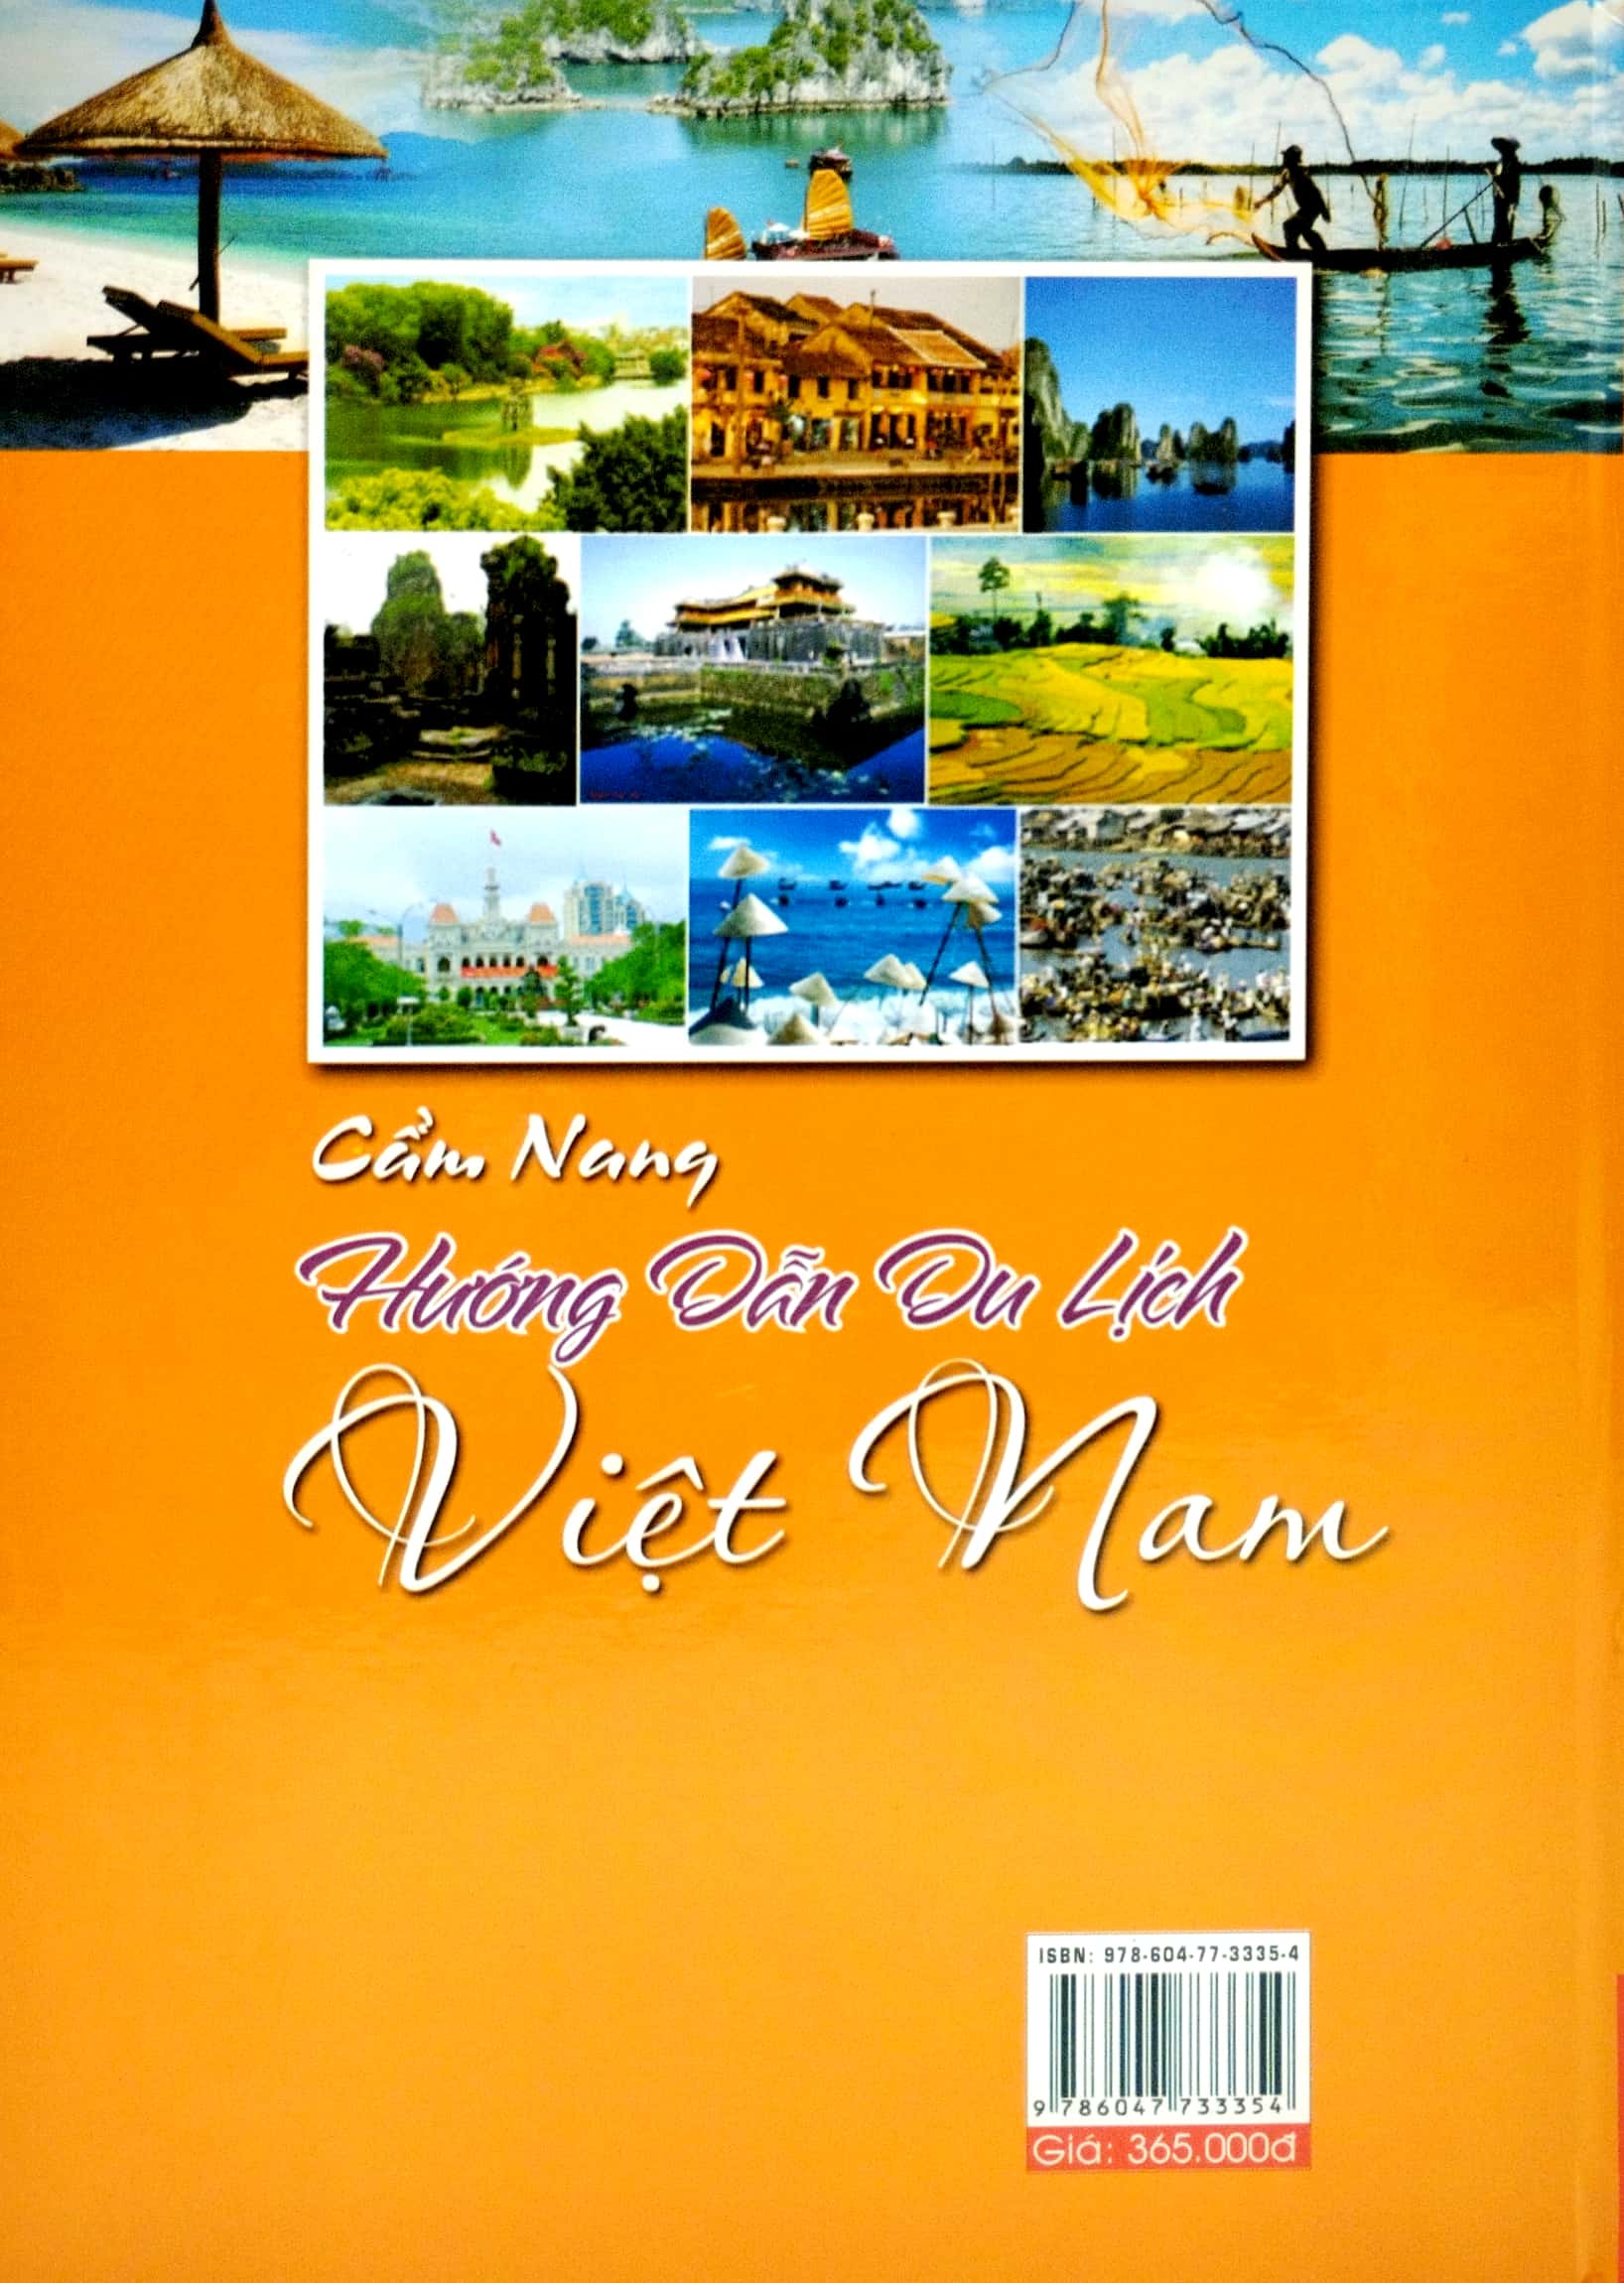 Cẩm Nang Hướng Dẫn Du Lịch Việt Nam PDF